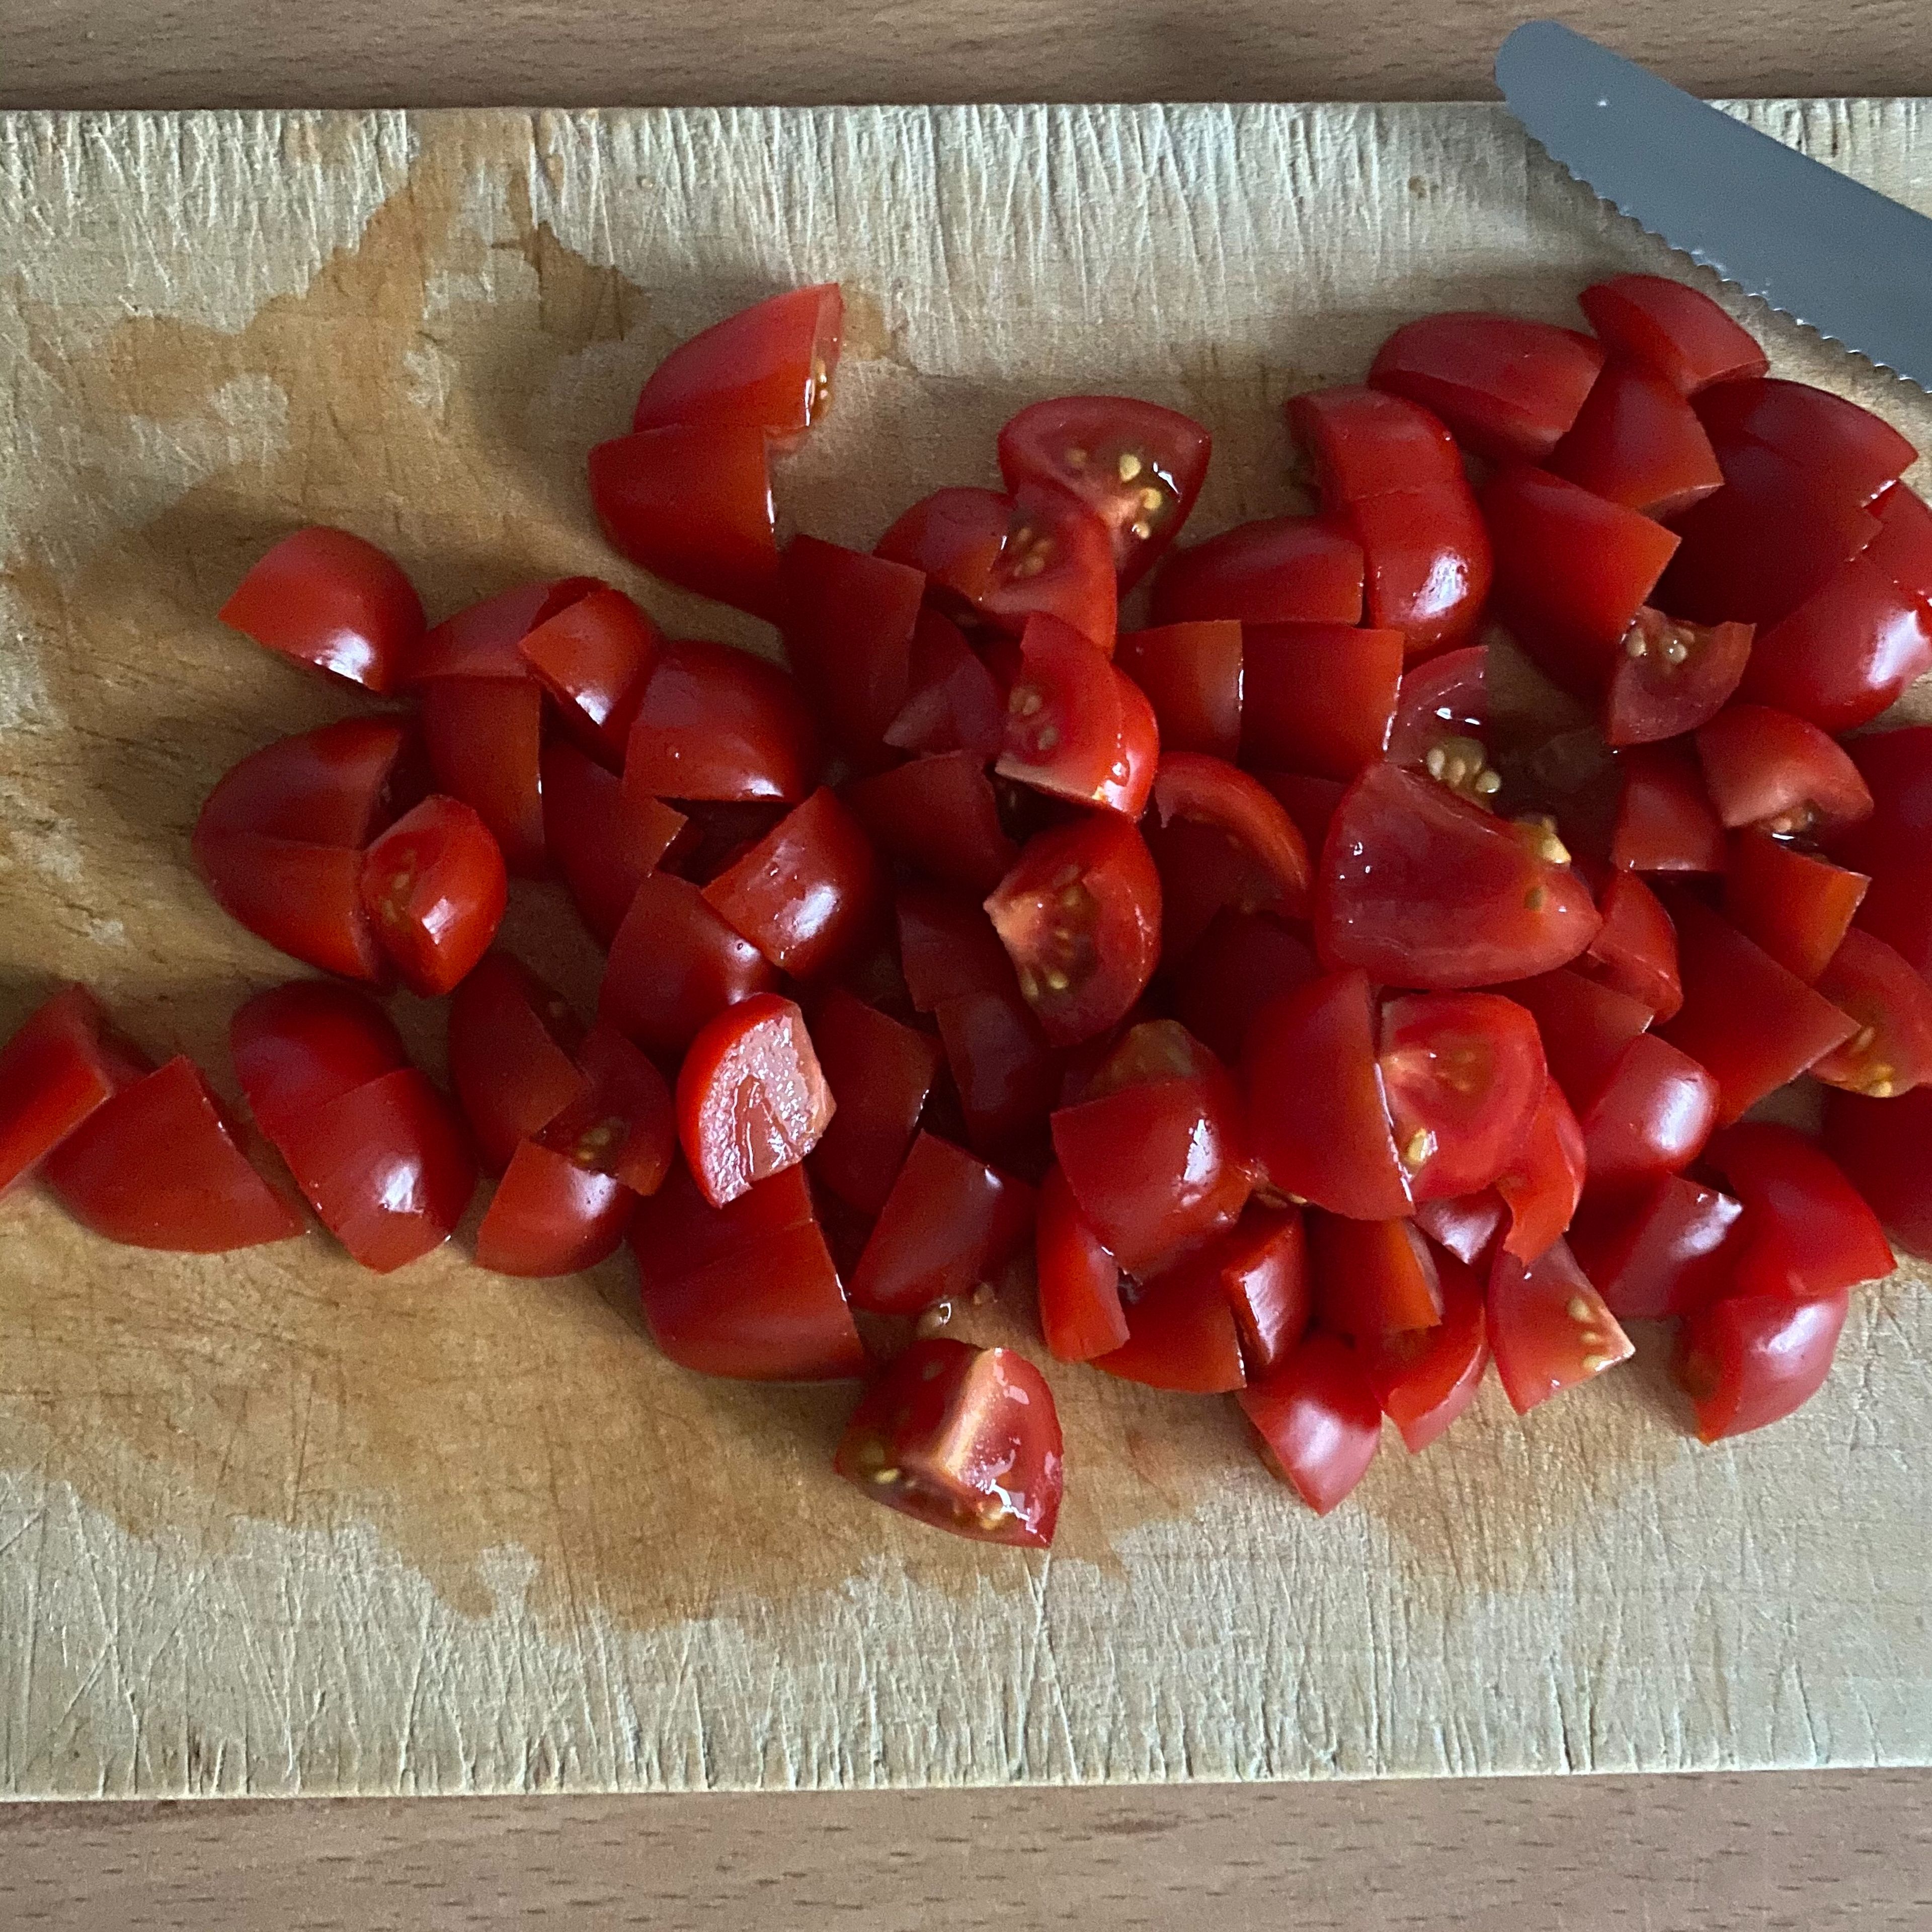 Die Tomaten in ca. 1cm große Würfel schneiden und die Oliven in Ringe schneiden.